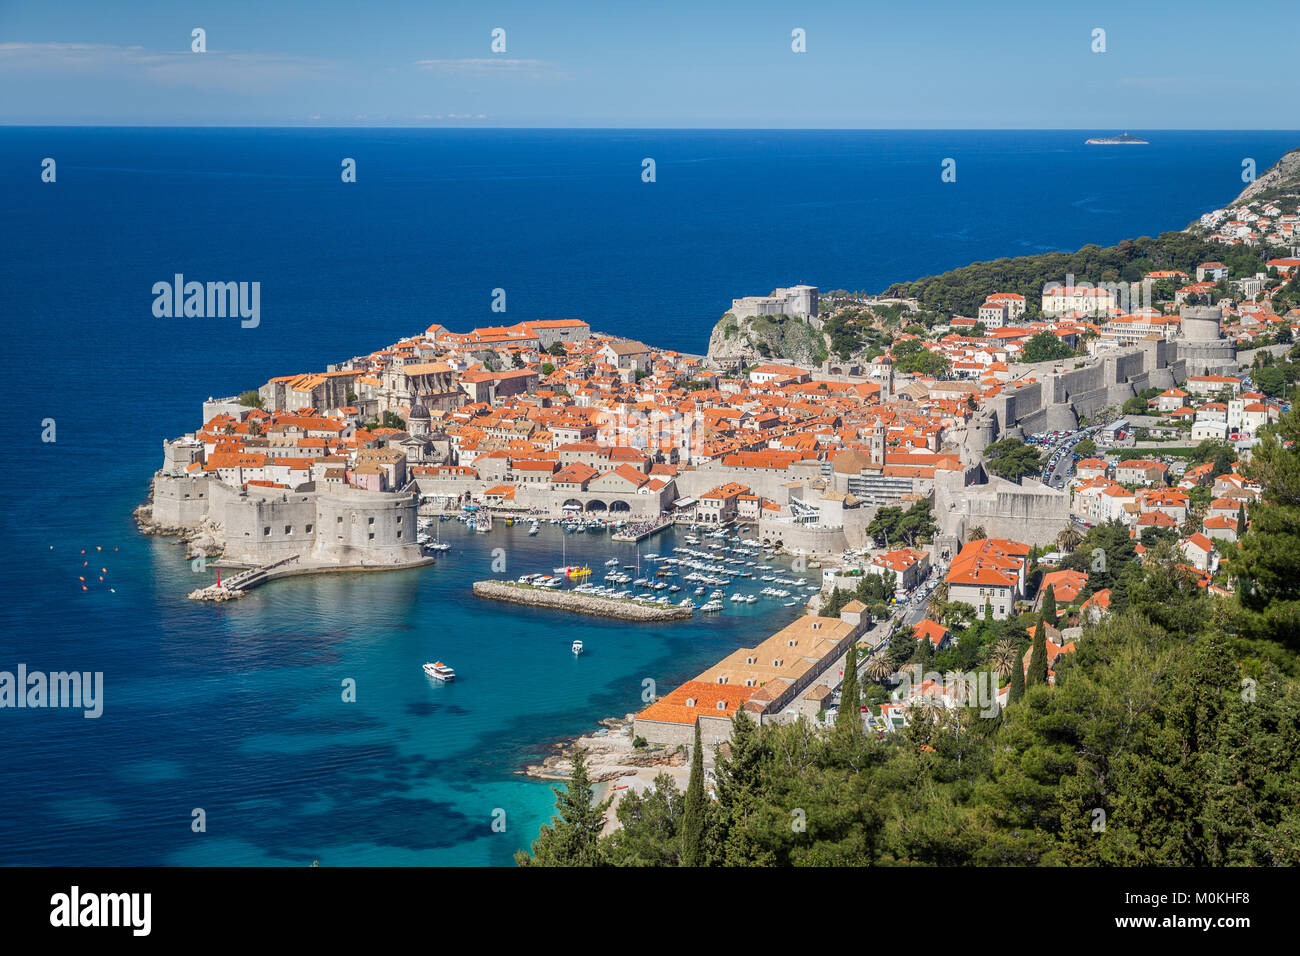 Vista panoramica del centro storico della città di Dubrovnik, una delle più famose destinazioni turistiche del Mar Mediterraneo, in estate, Dalmazia, Croazia Foto Stock